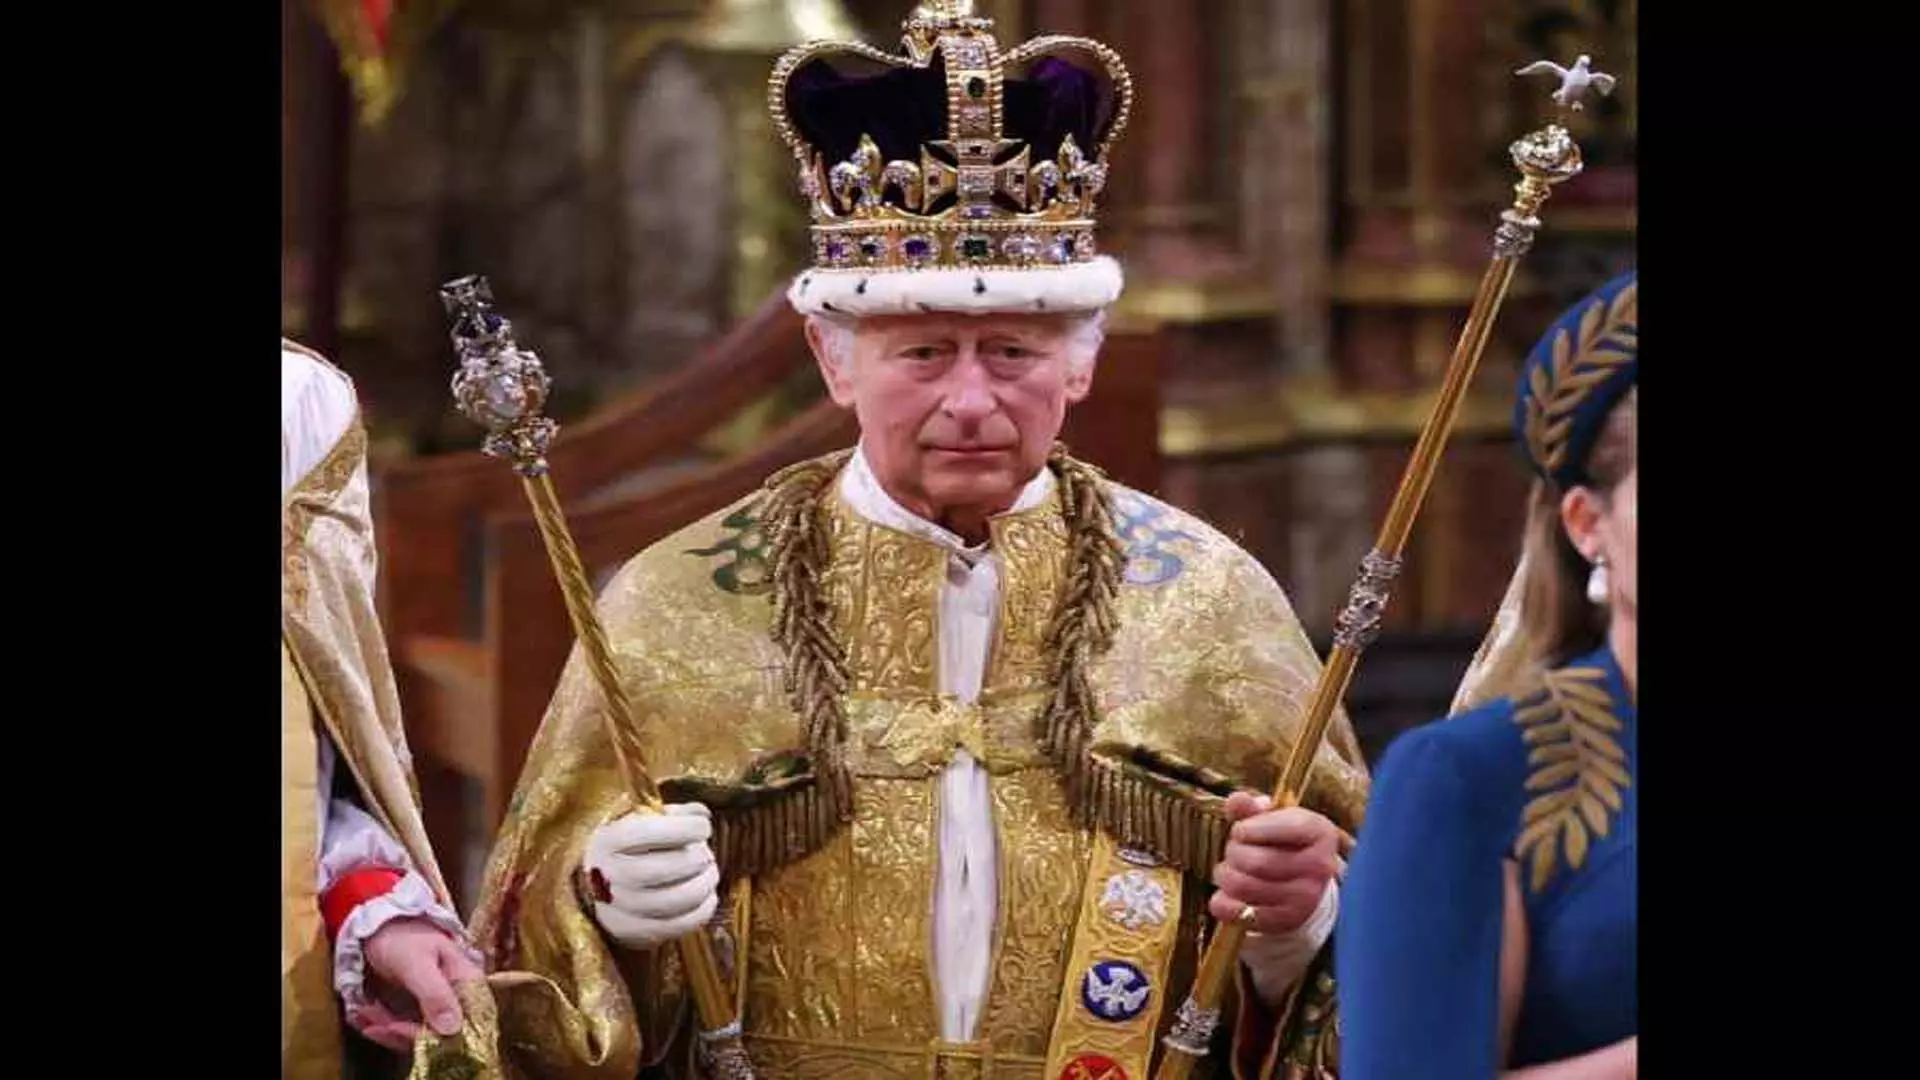 किंग चार्ल्स के कैंसर निदान के मद्देनजर ब्रिटिश शाही परिवार में संकट पर प्रकाश डाला गया